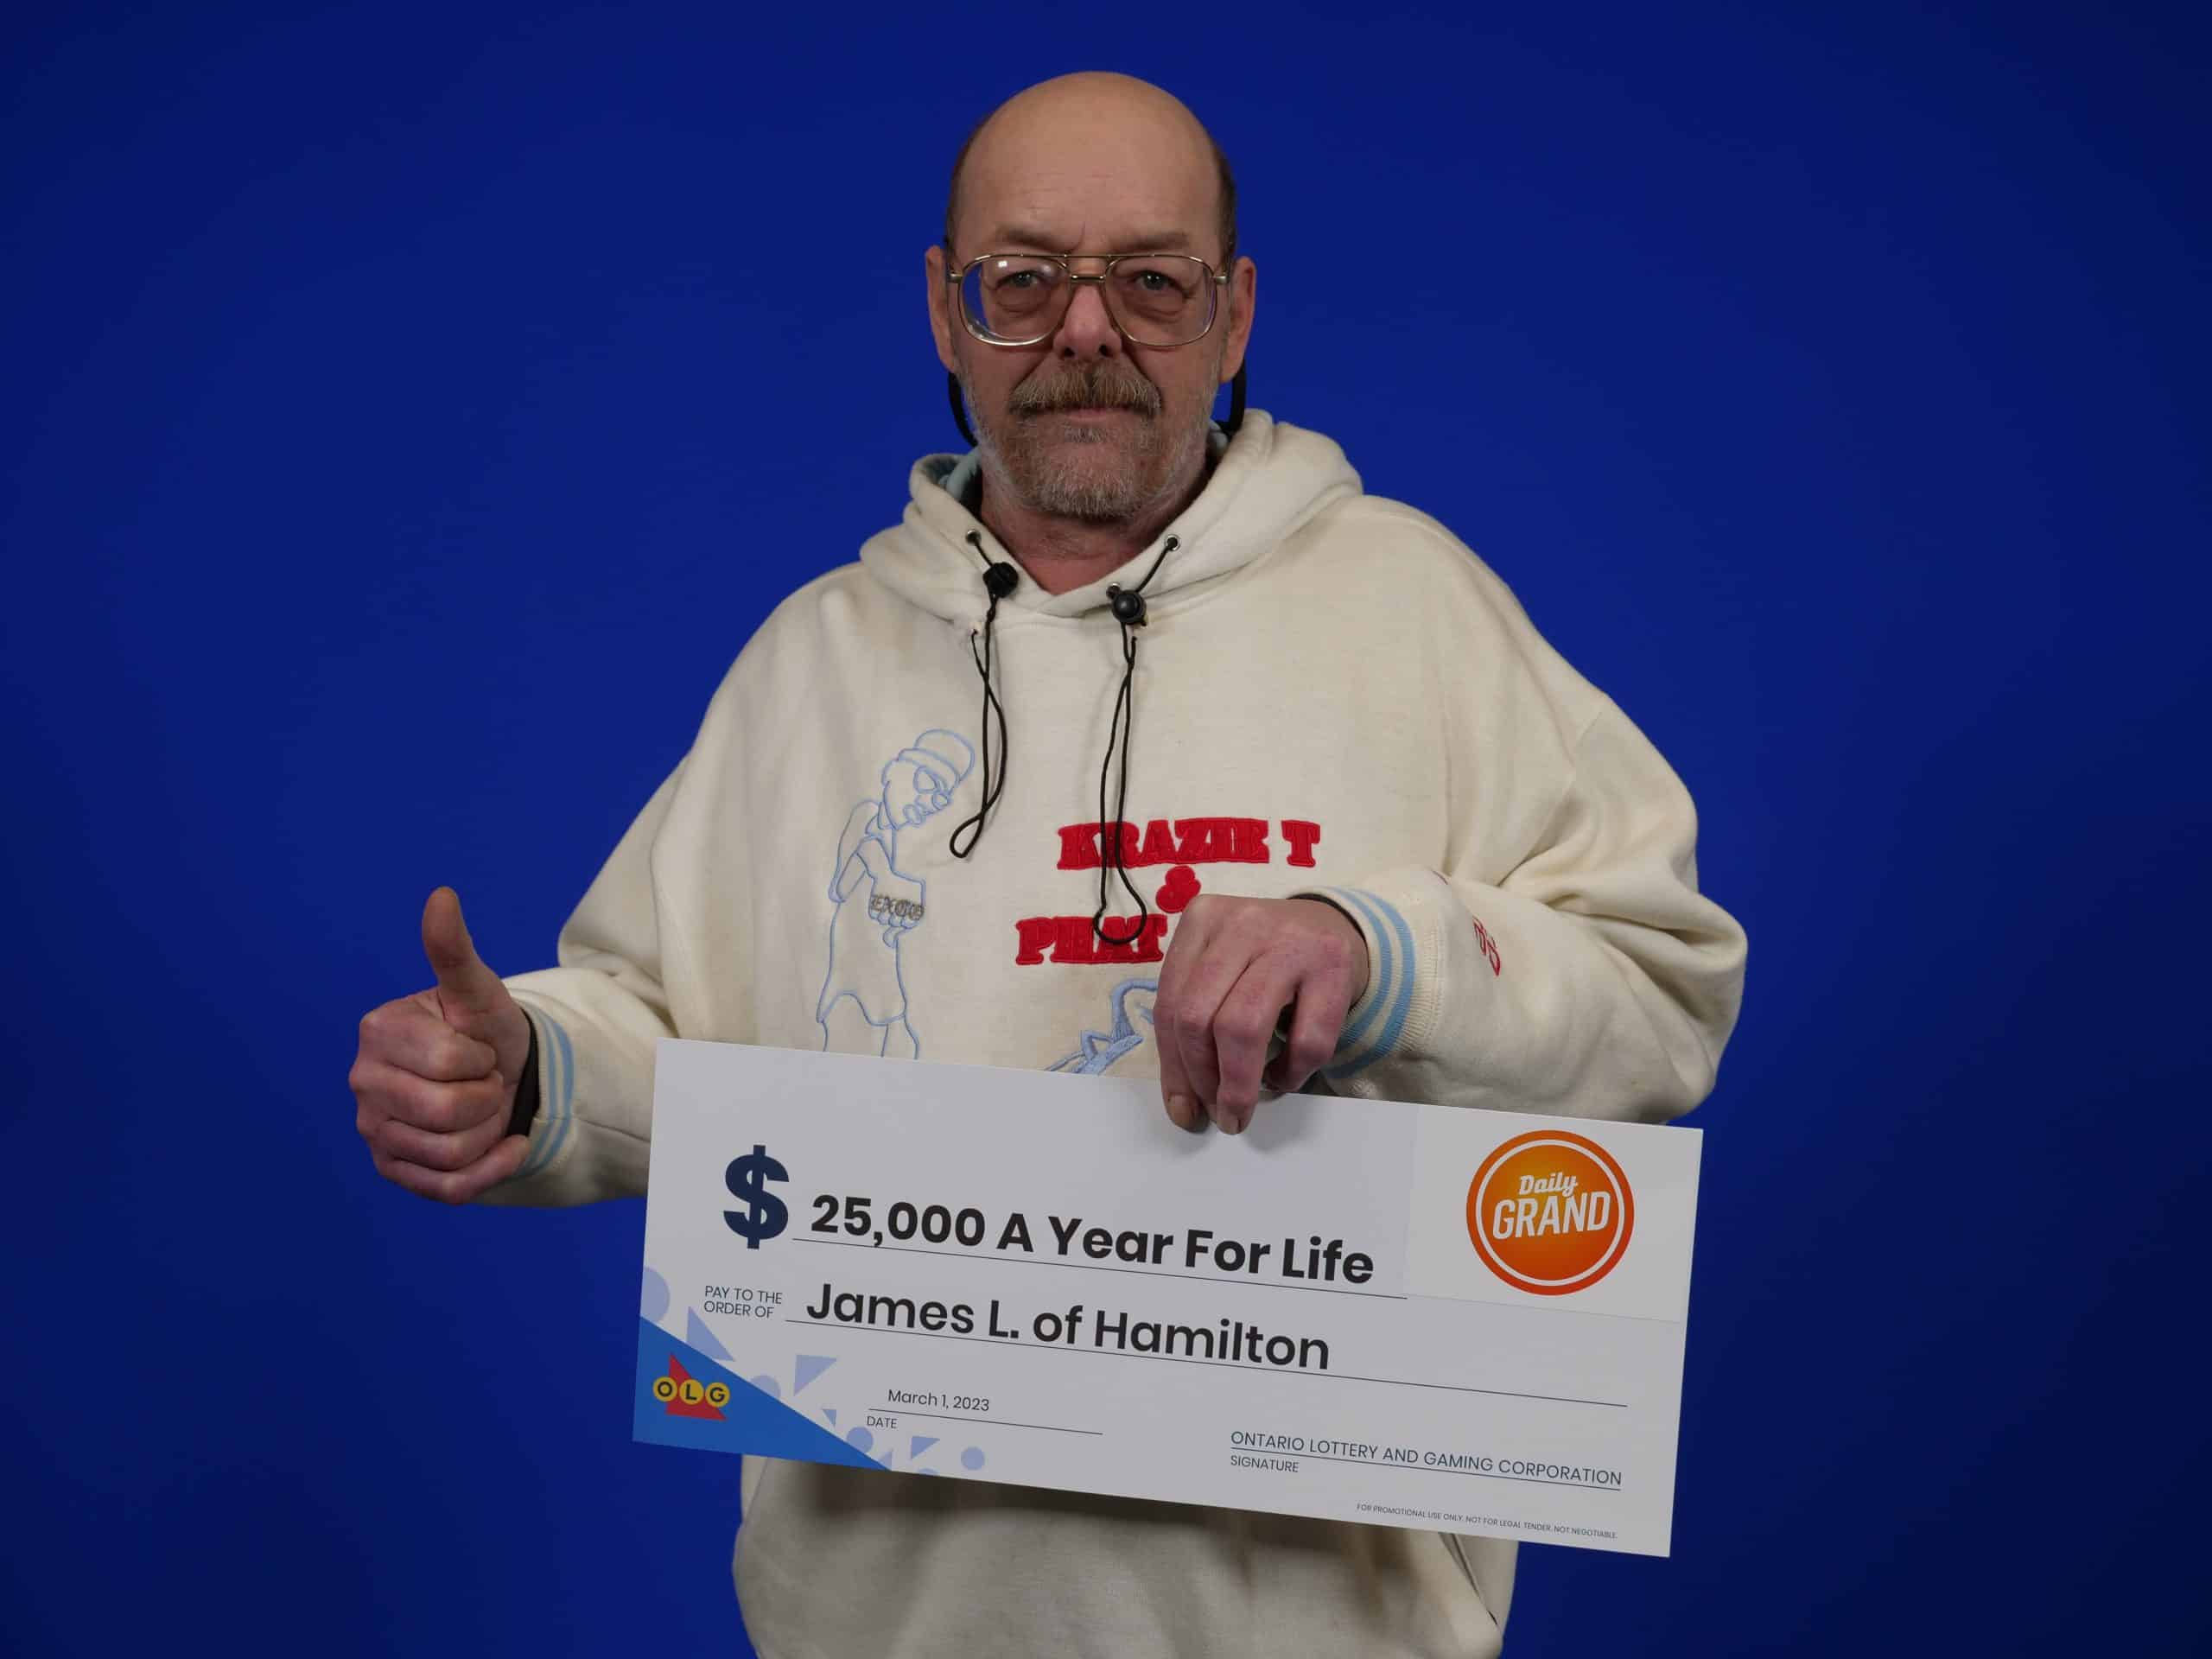 hamilton man daily grand lottery 500,000 25,000 for life